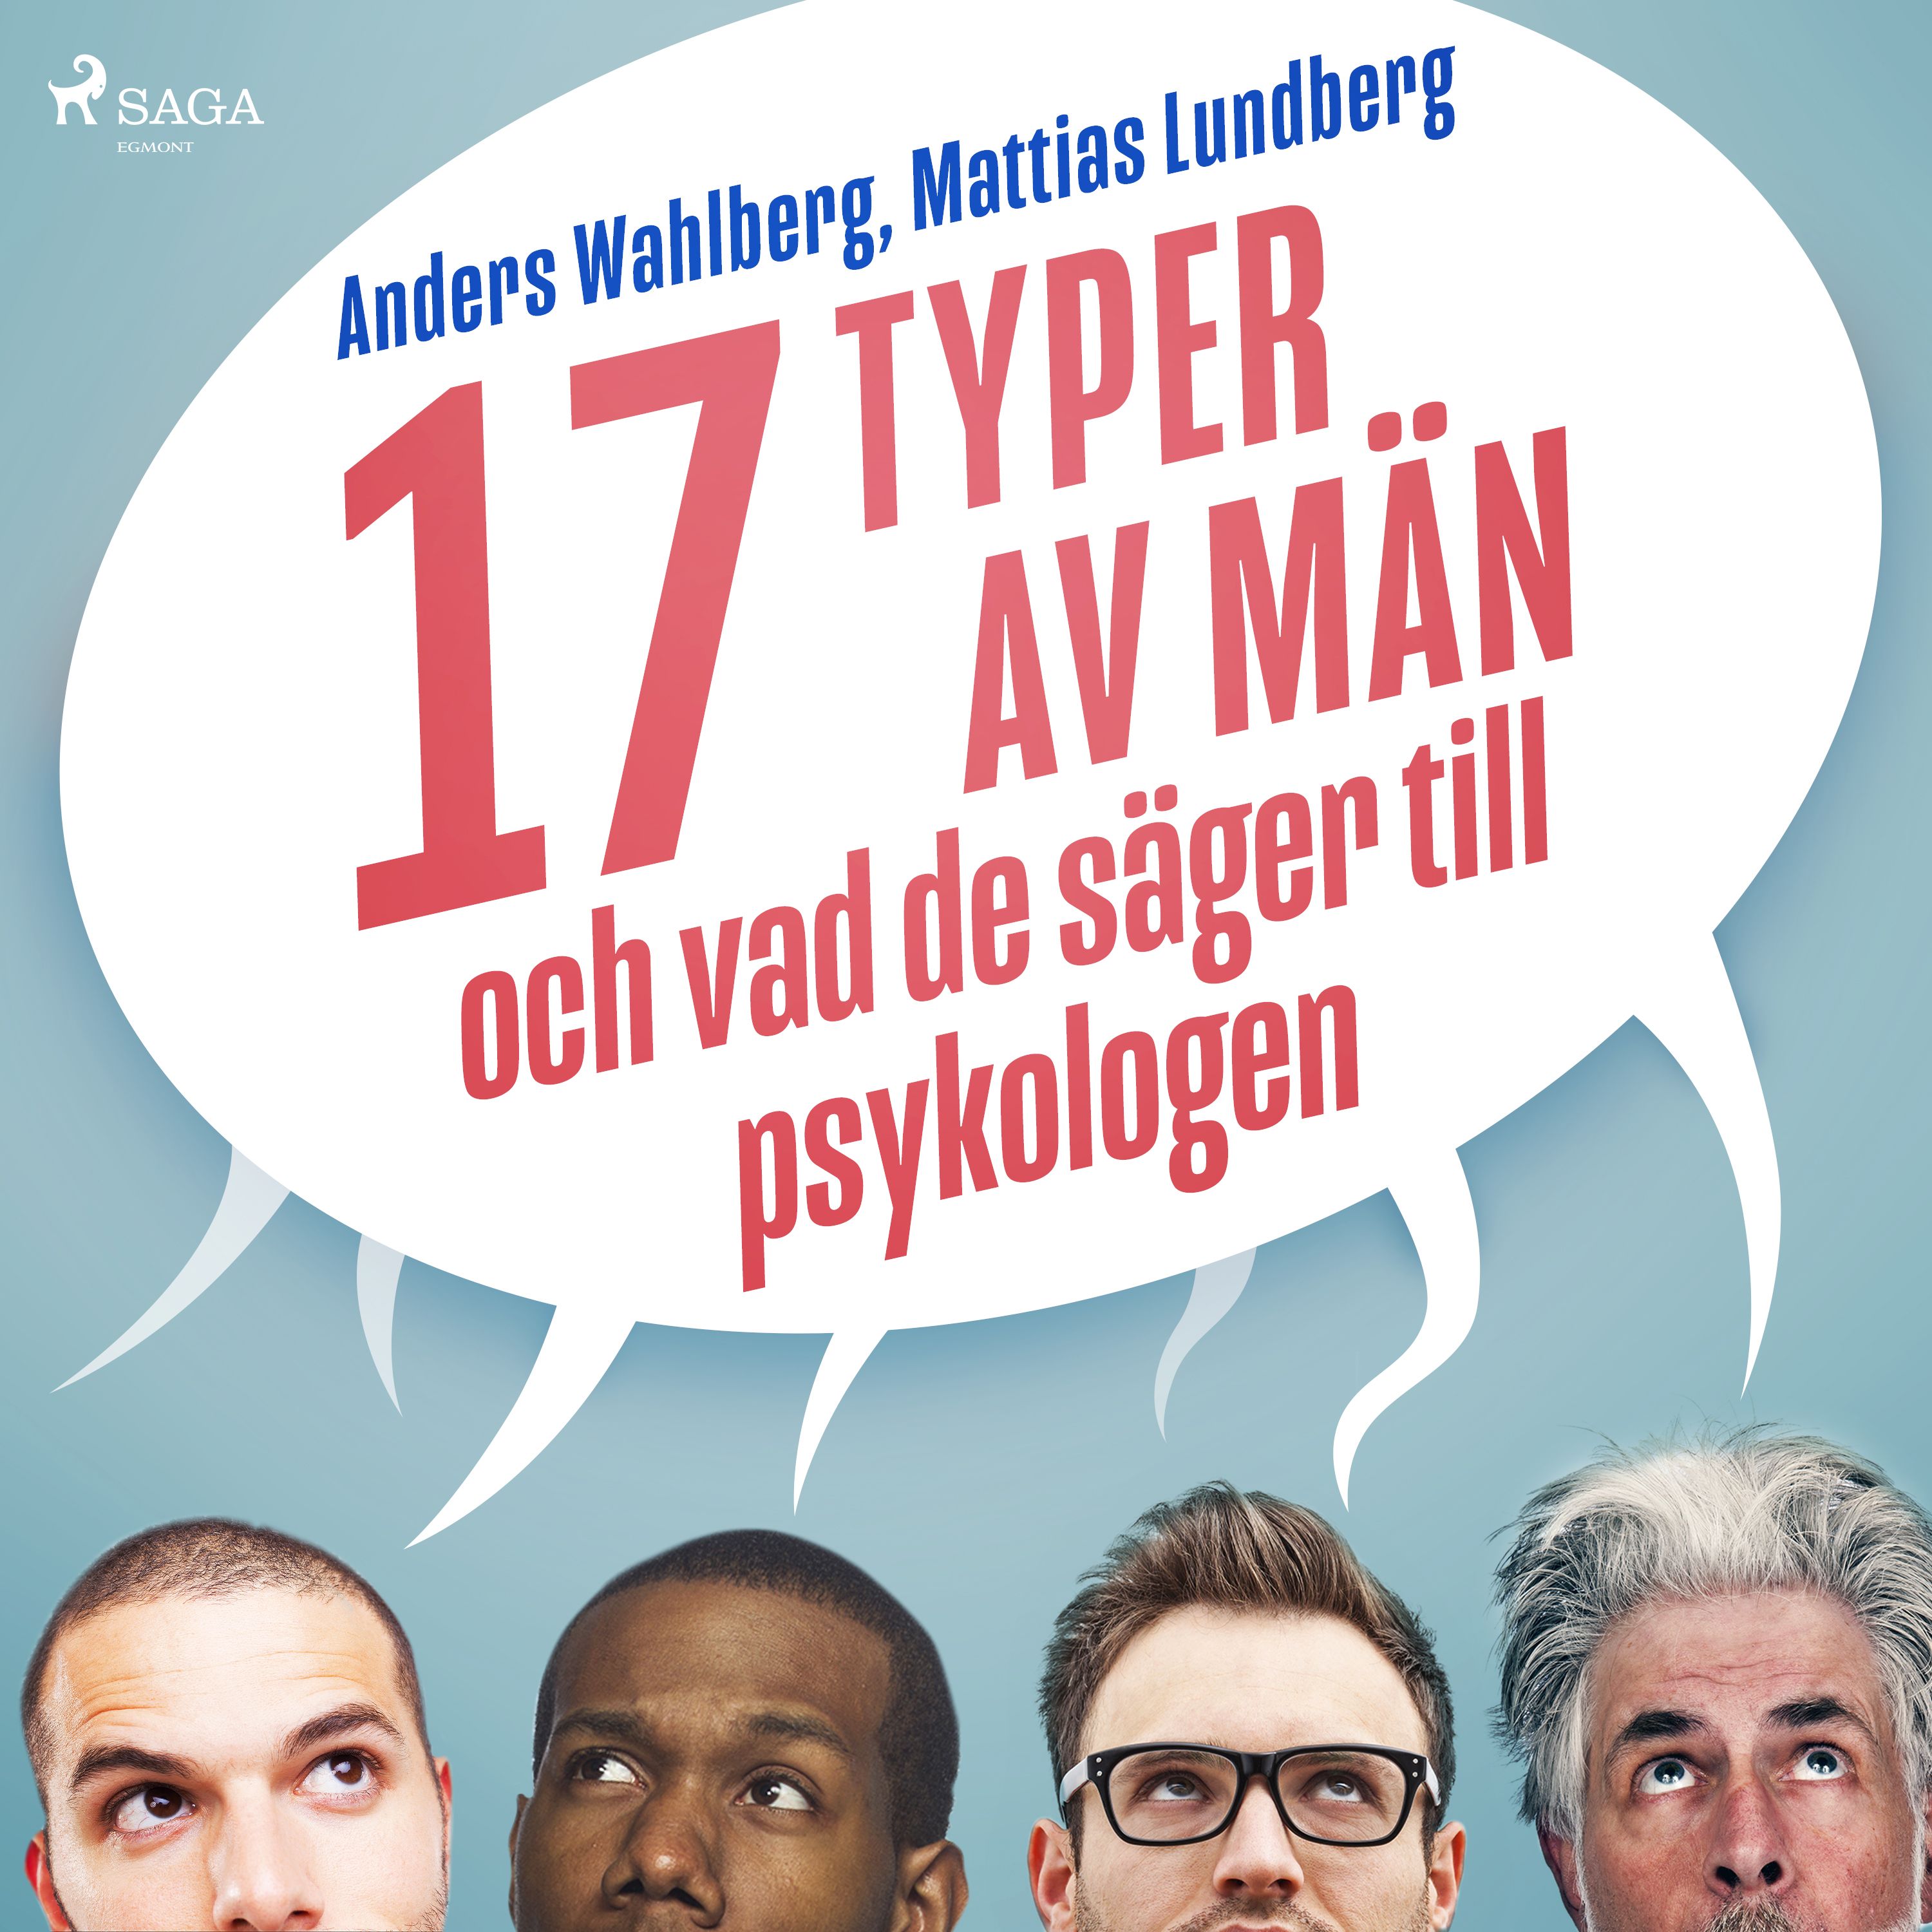 17 typer av män - och vad de säger till psykologen, audiobook by Mattias Lundberg, Anders Wahlberg